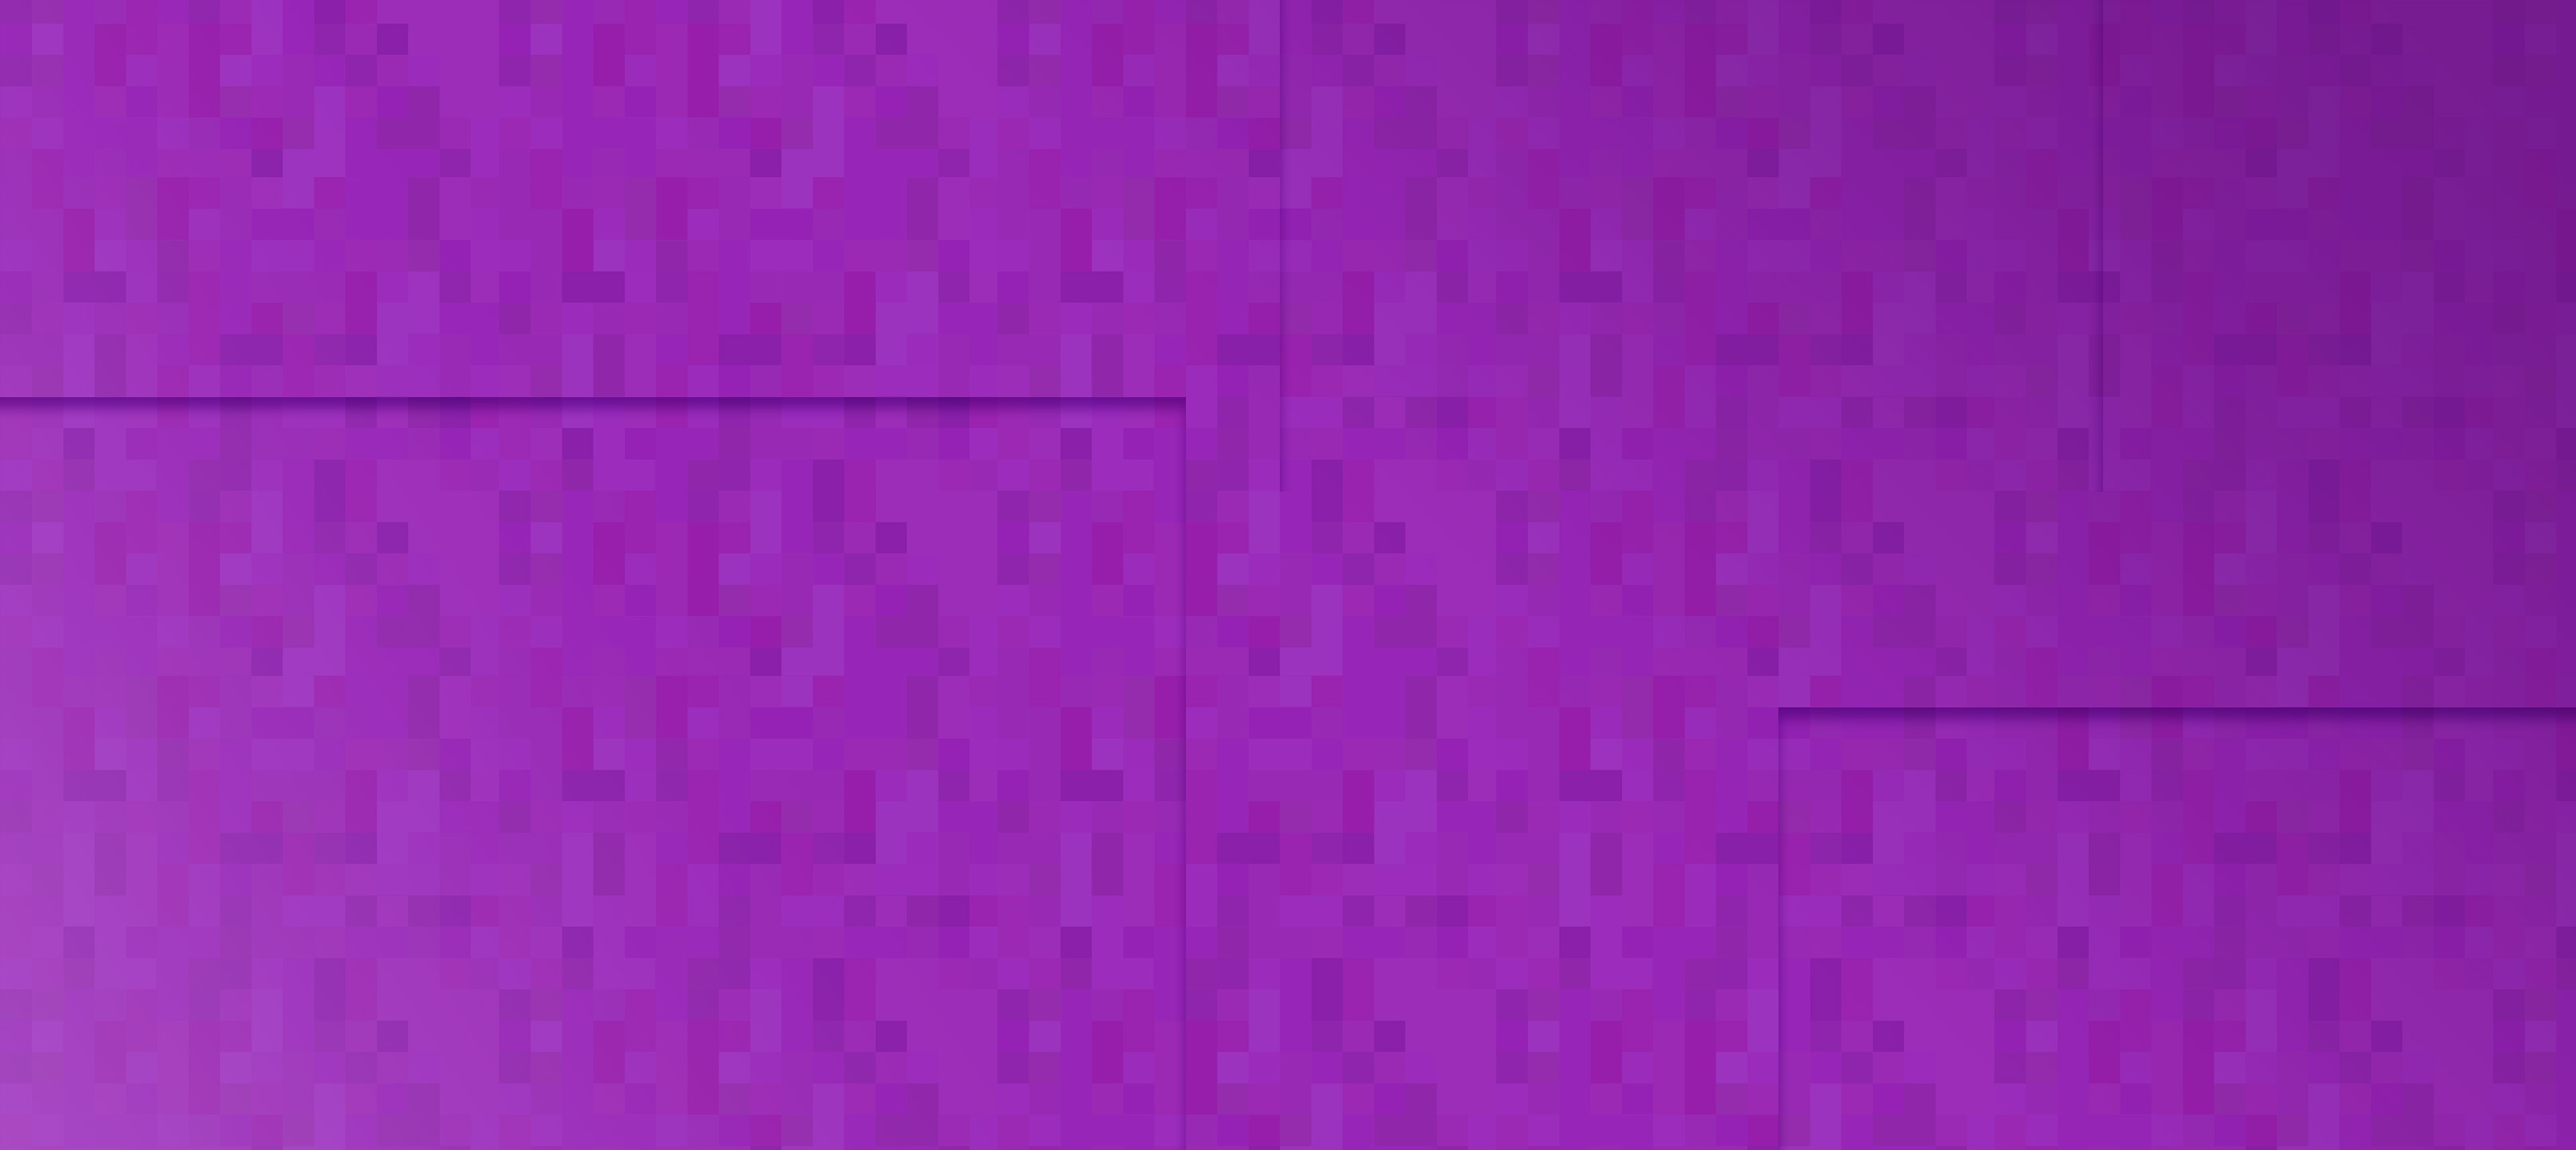 Pixel Art achtergrond met texture